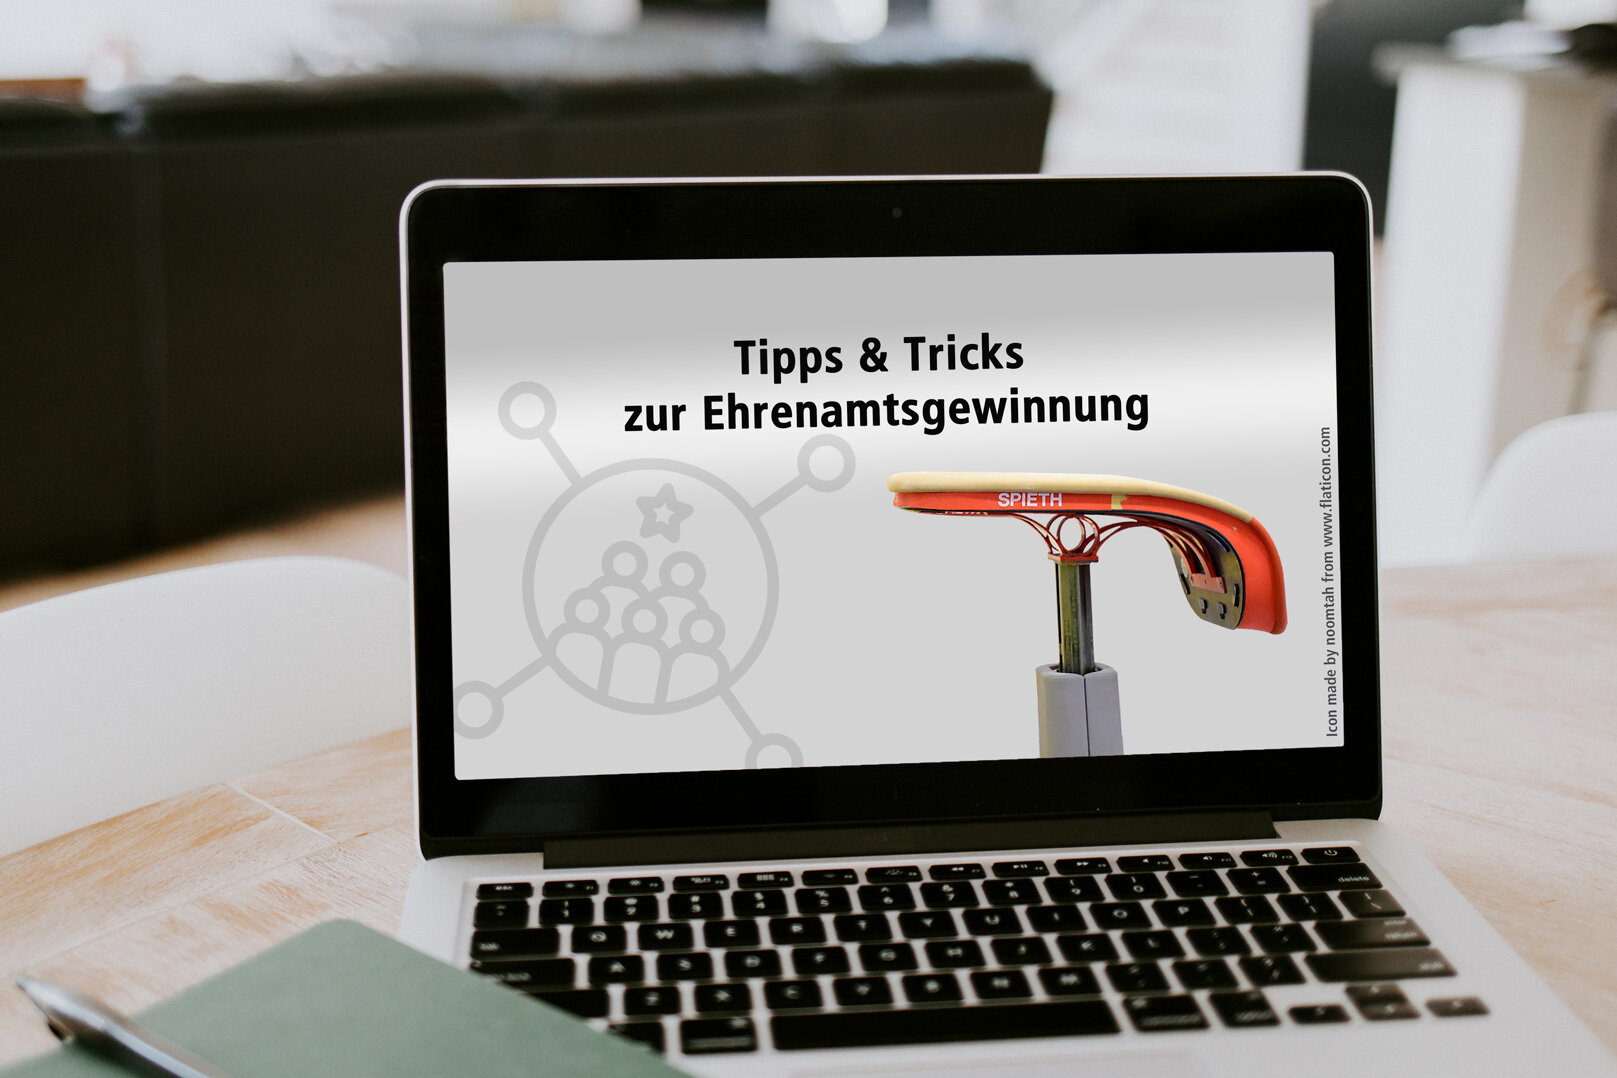 [Translate to Einfache Sprache:] Laptop mit der Aufschrift "Tipps & Tricks zur Ehrenamtsgewinnung"